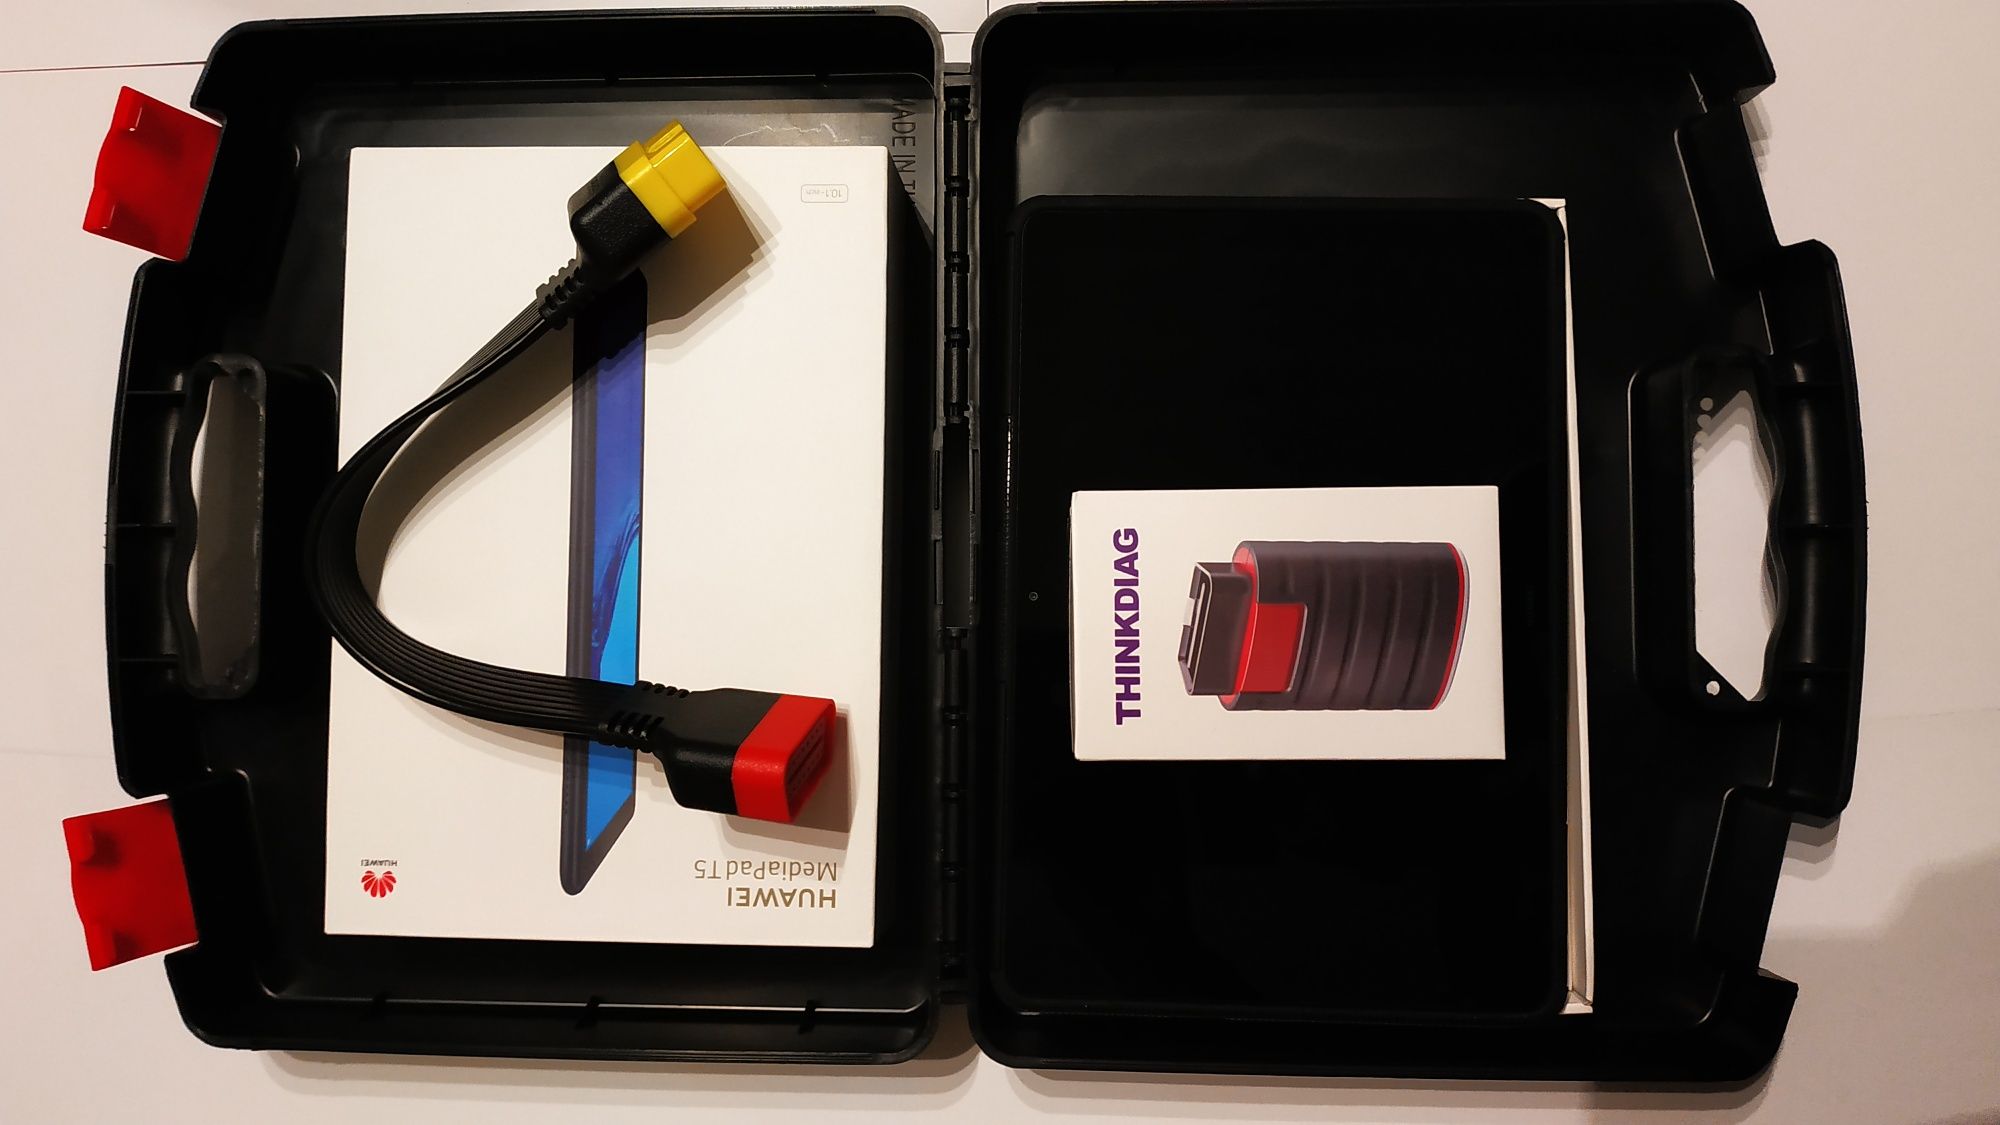 Kit tester diagnoza auto easydiag T4.0 + Tableta Huawei 10.1" 4G